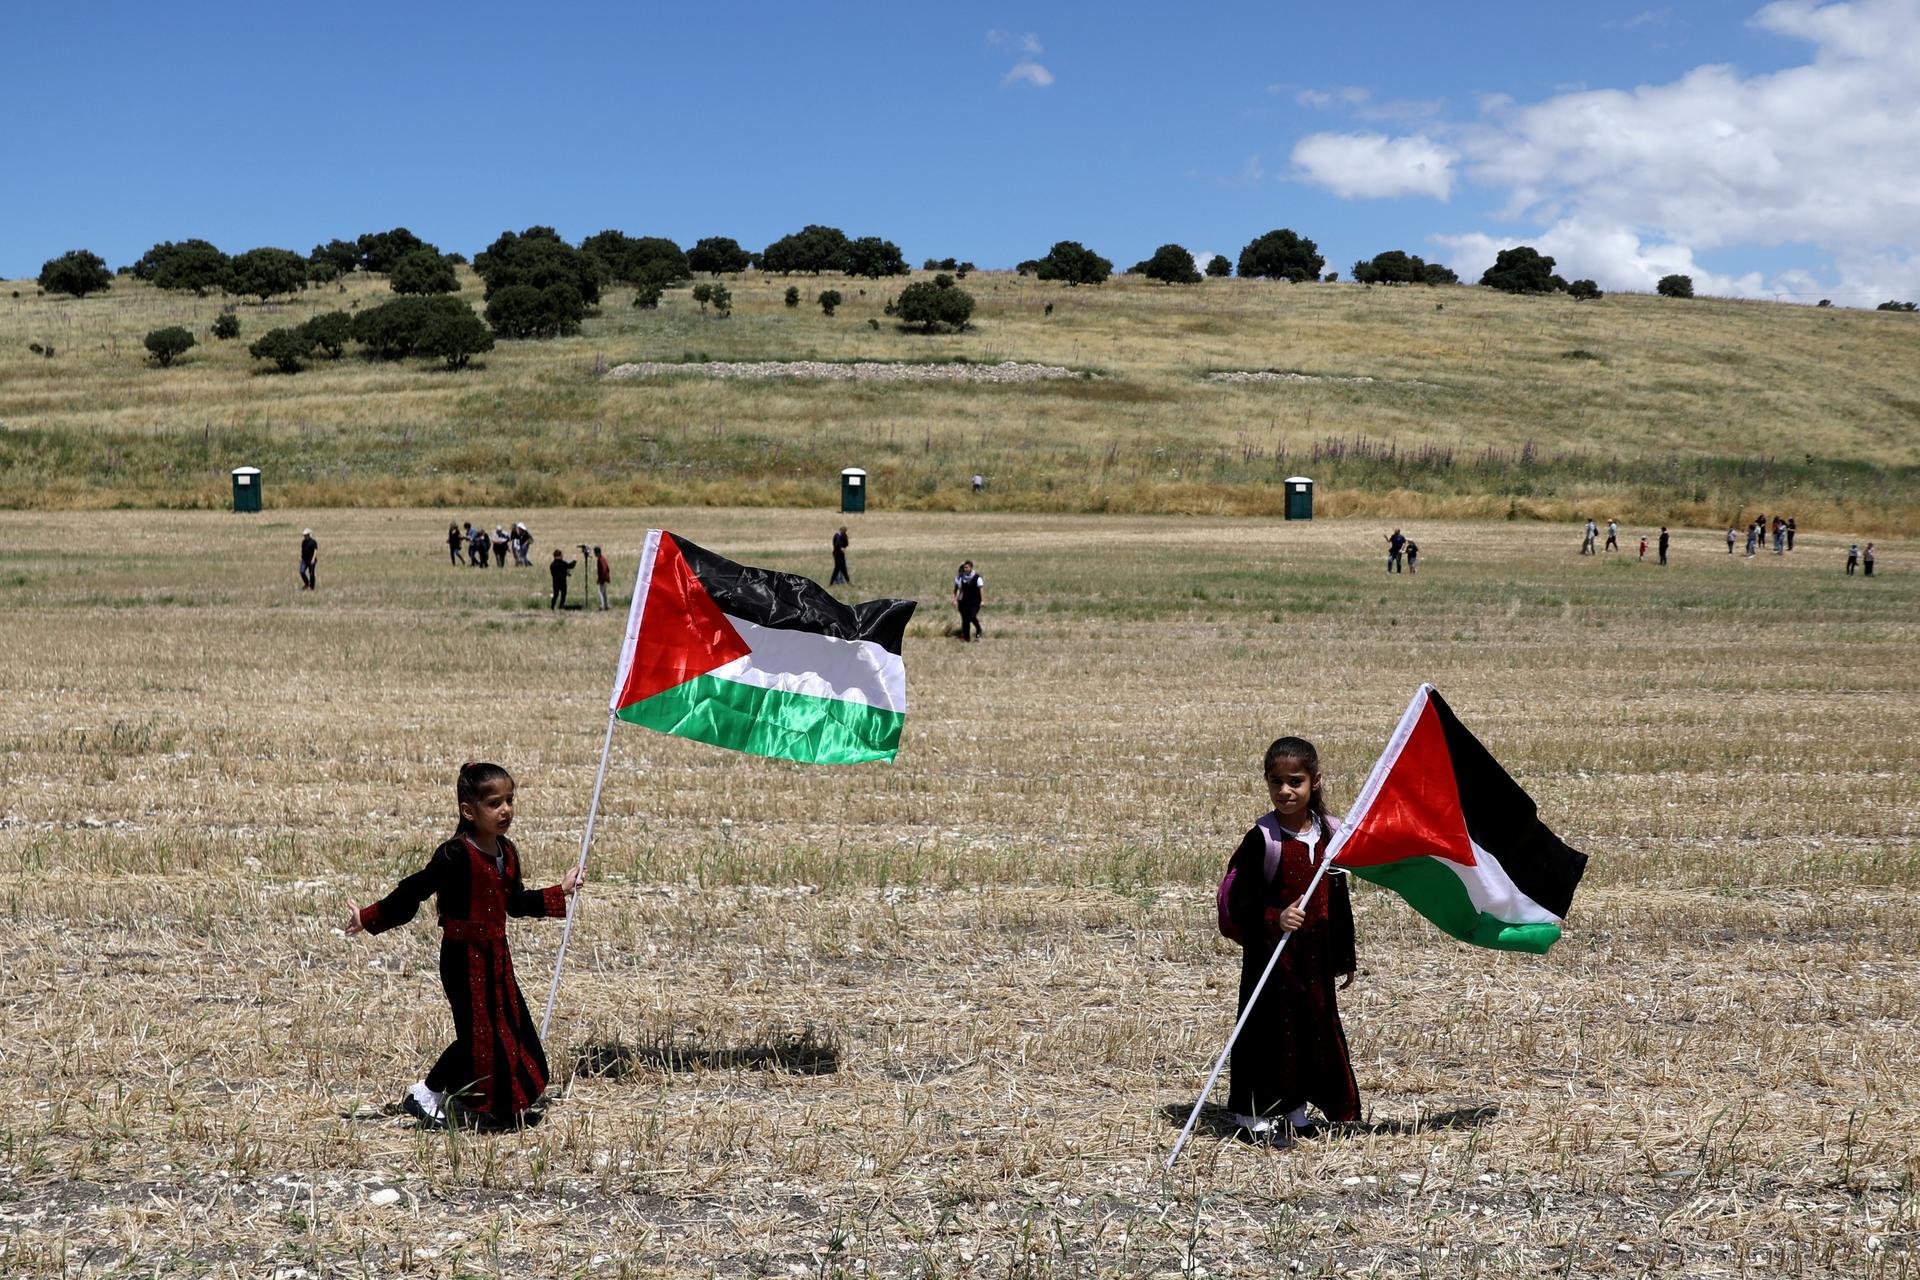 Children wave Palestinian flags in an open field.